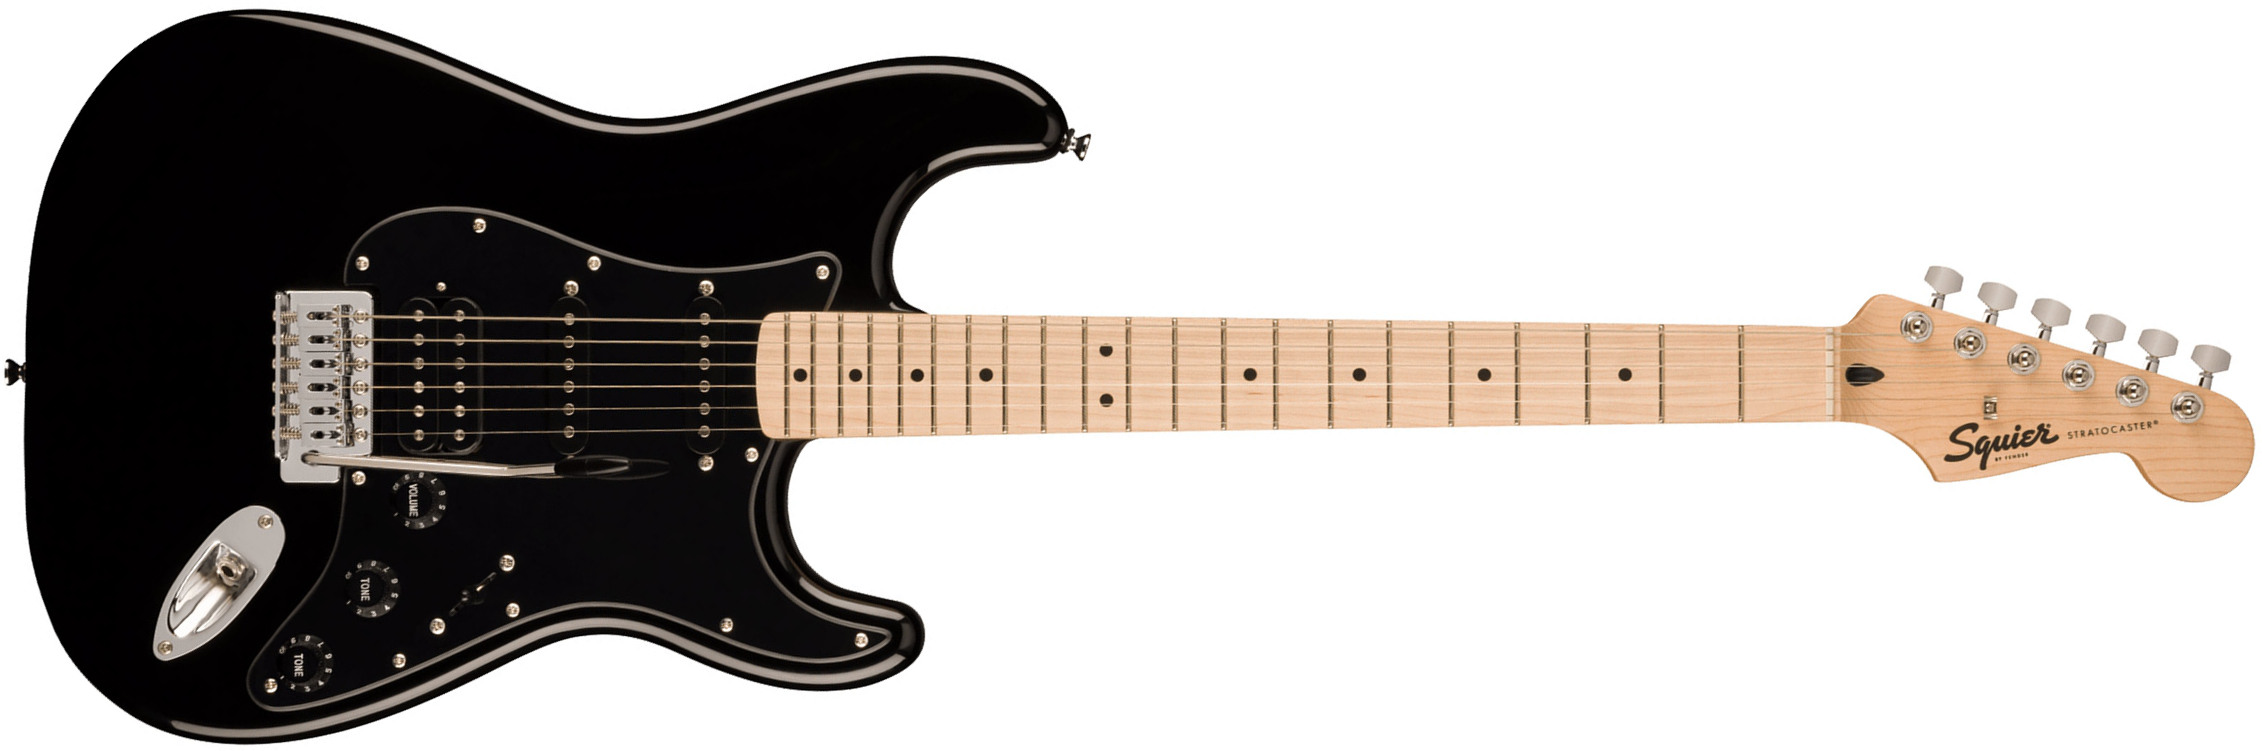 Squier Strat Sonic Hss Trem Mn - Black - Guitarra eléctrica con forma de str. - Main picture